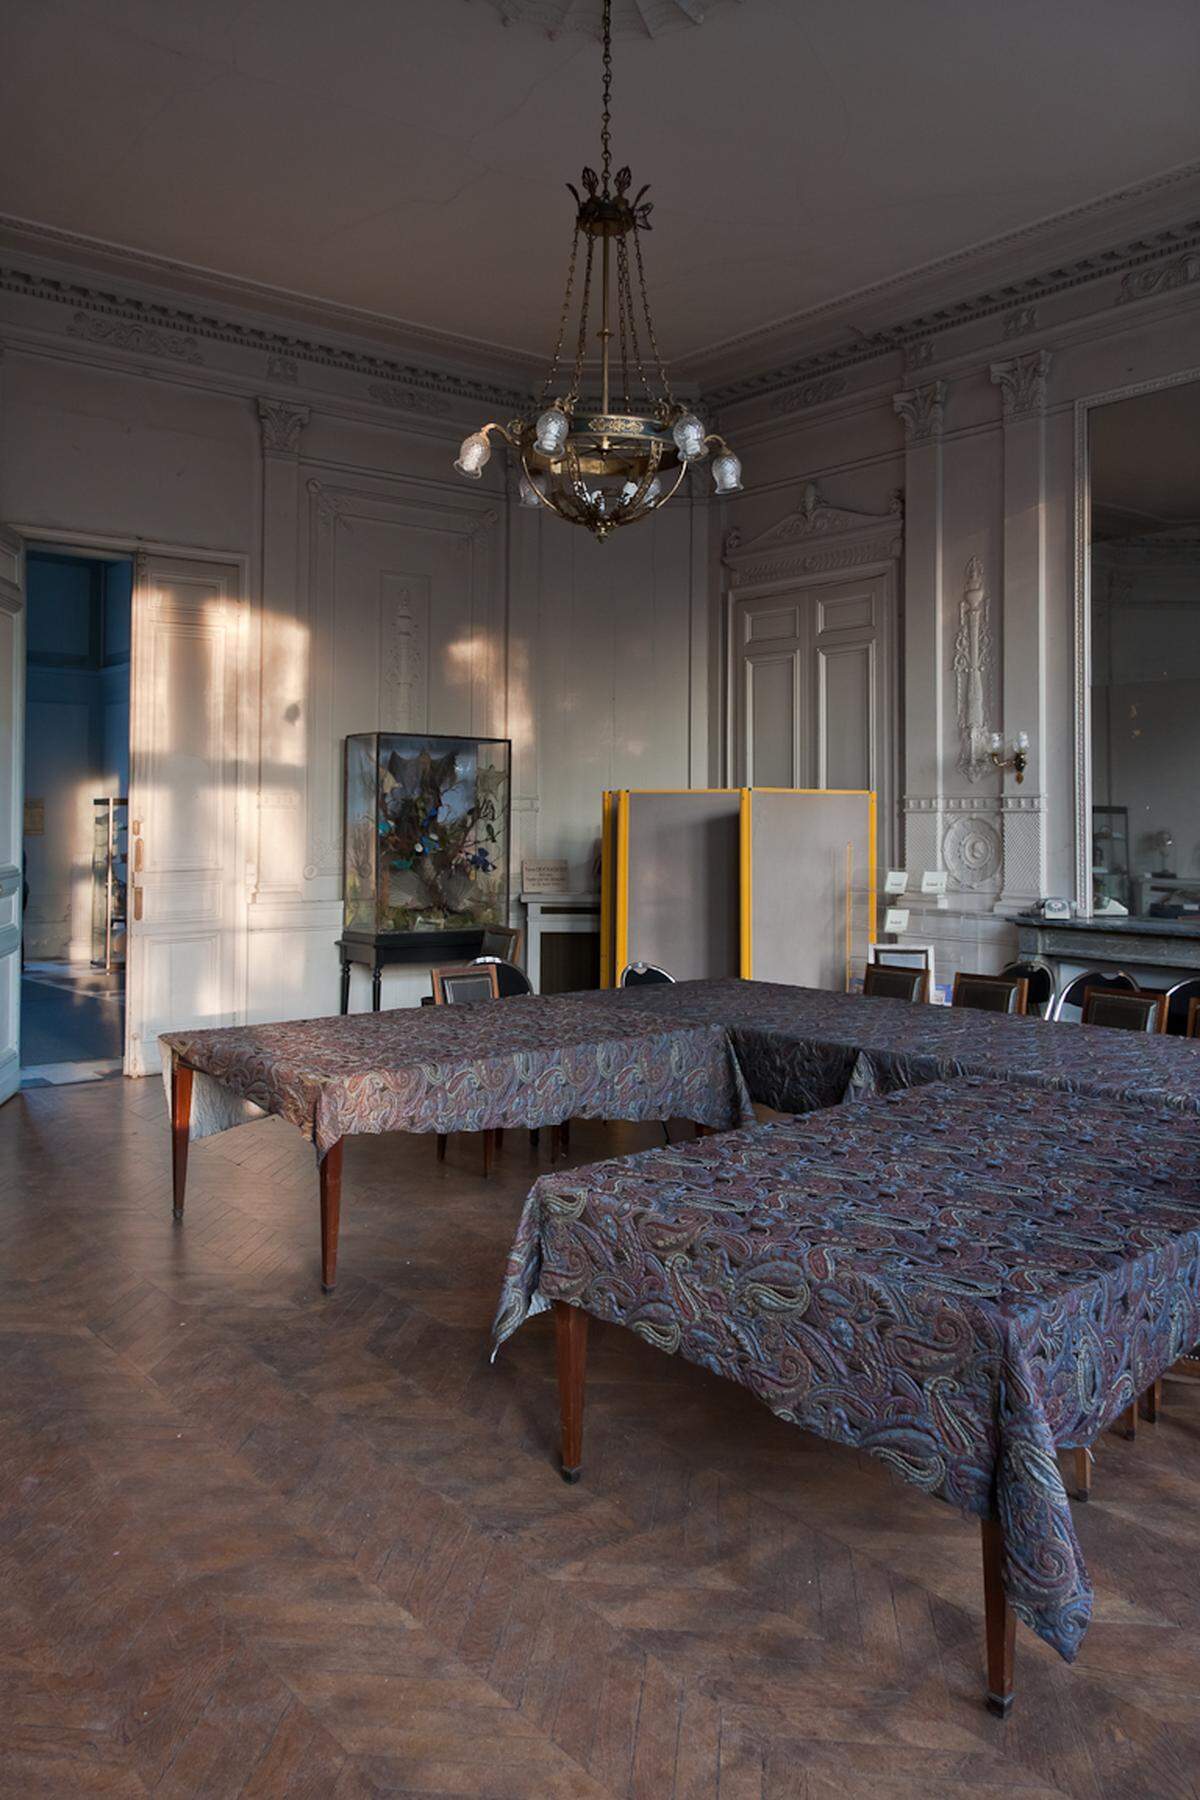 Der Ehrensaal der Cité Scolaire Jean-Baptiste Say: Das Anwesen, bestehend aus einer Residenz mit Parkanlage, wurde im 19. Jahrhundert zu einer Privatschule umfunktioniert und in Folge schrittweise erweitert.